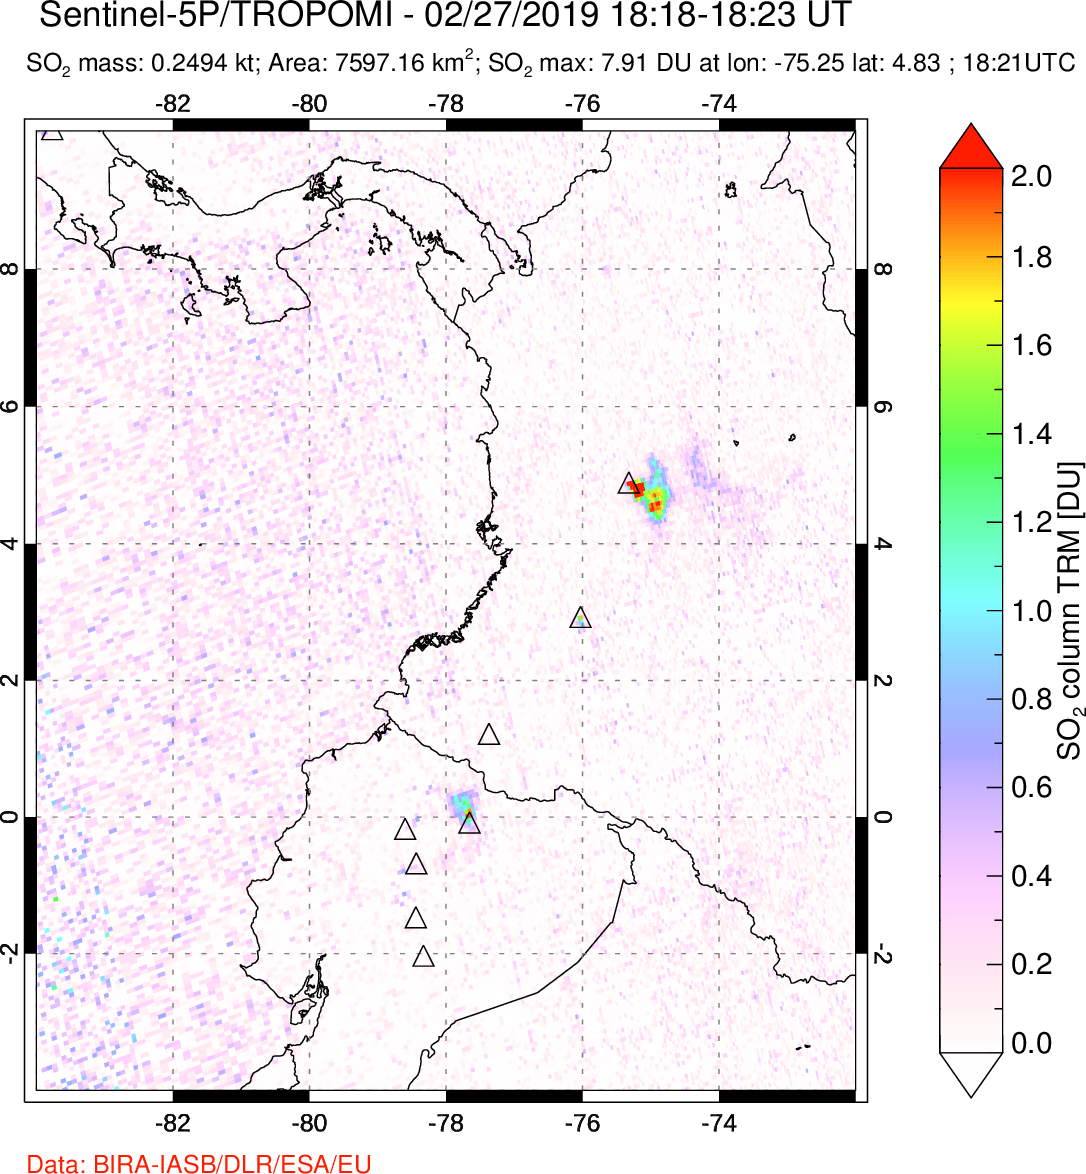 A sulfur dioxide image over Ecuador on Feb 27, 2019.